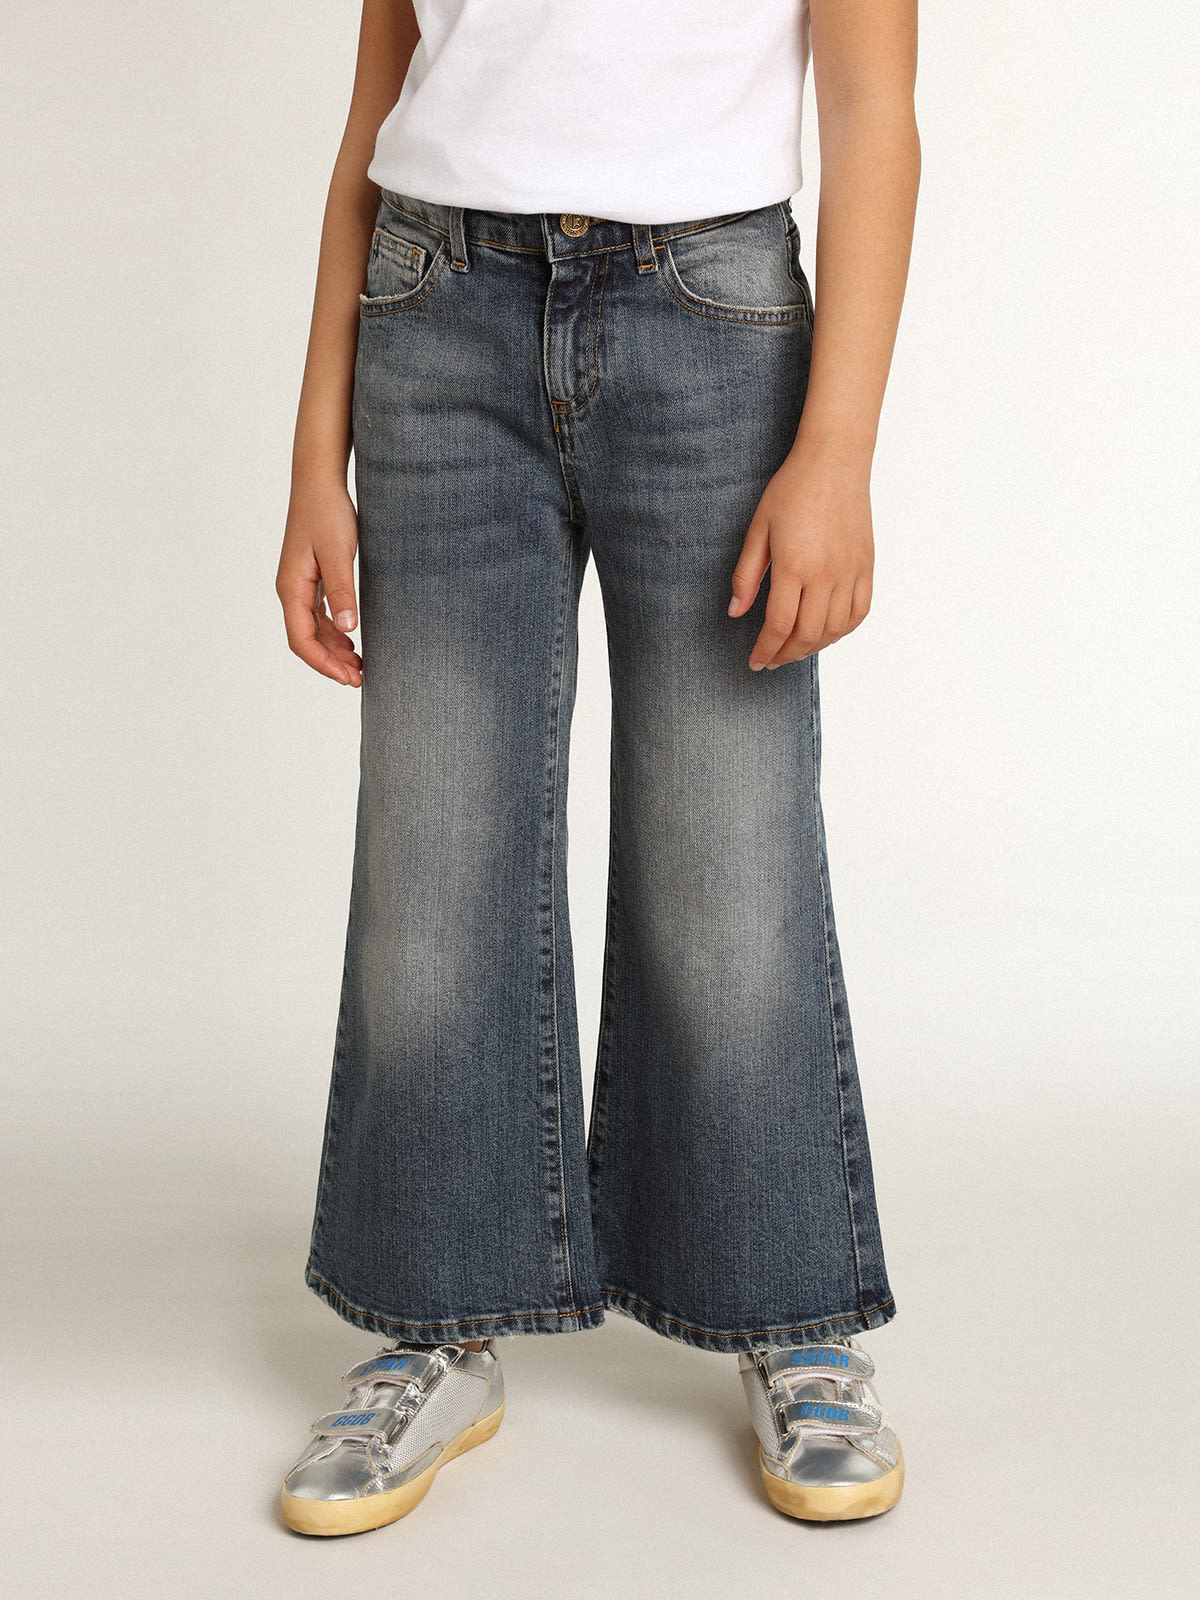 Golden Goose - Pantalone jeans gamba larga in bull denim in 